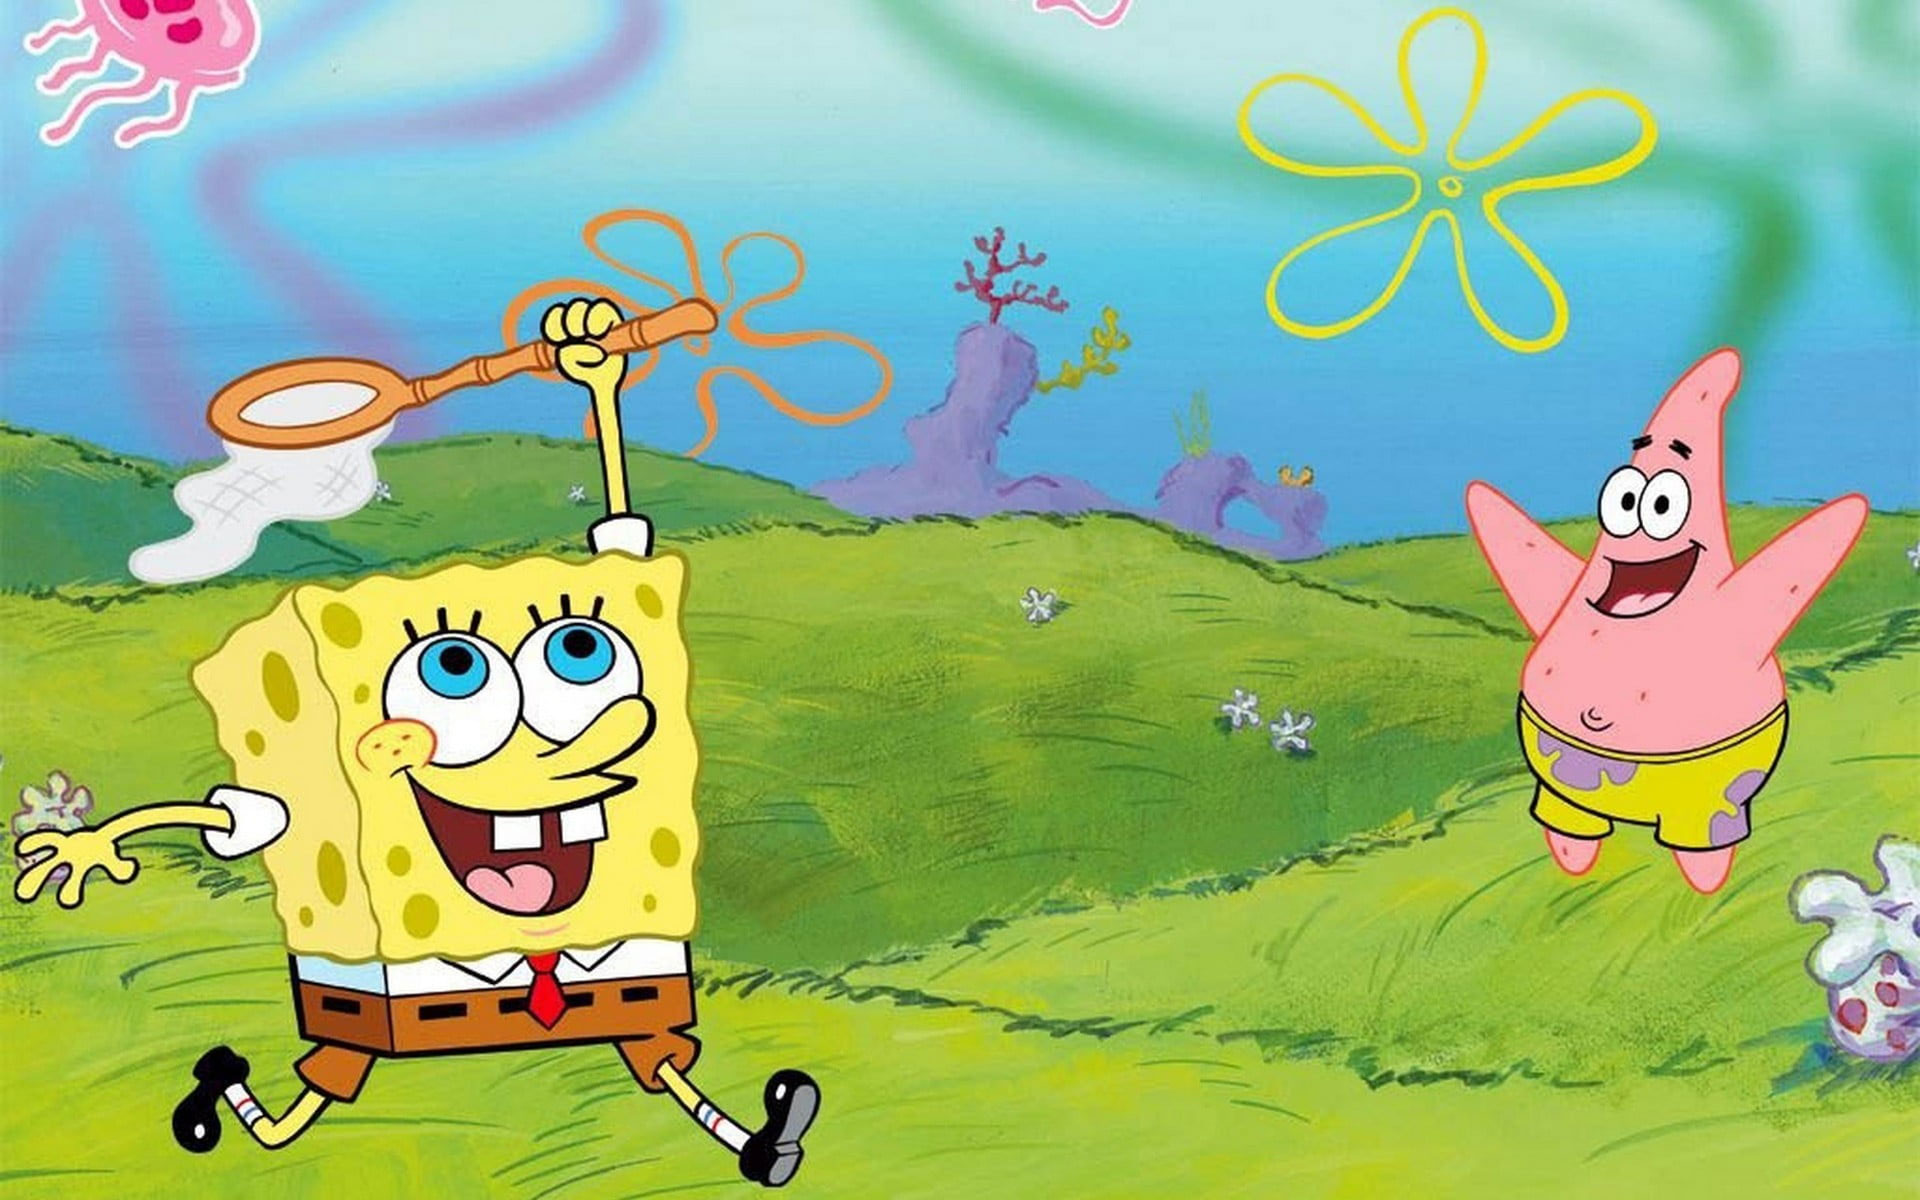 Spongebob Squarepants And Patrick Star Wallpaper - Wallpaperforu